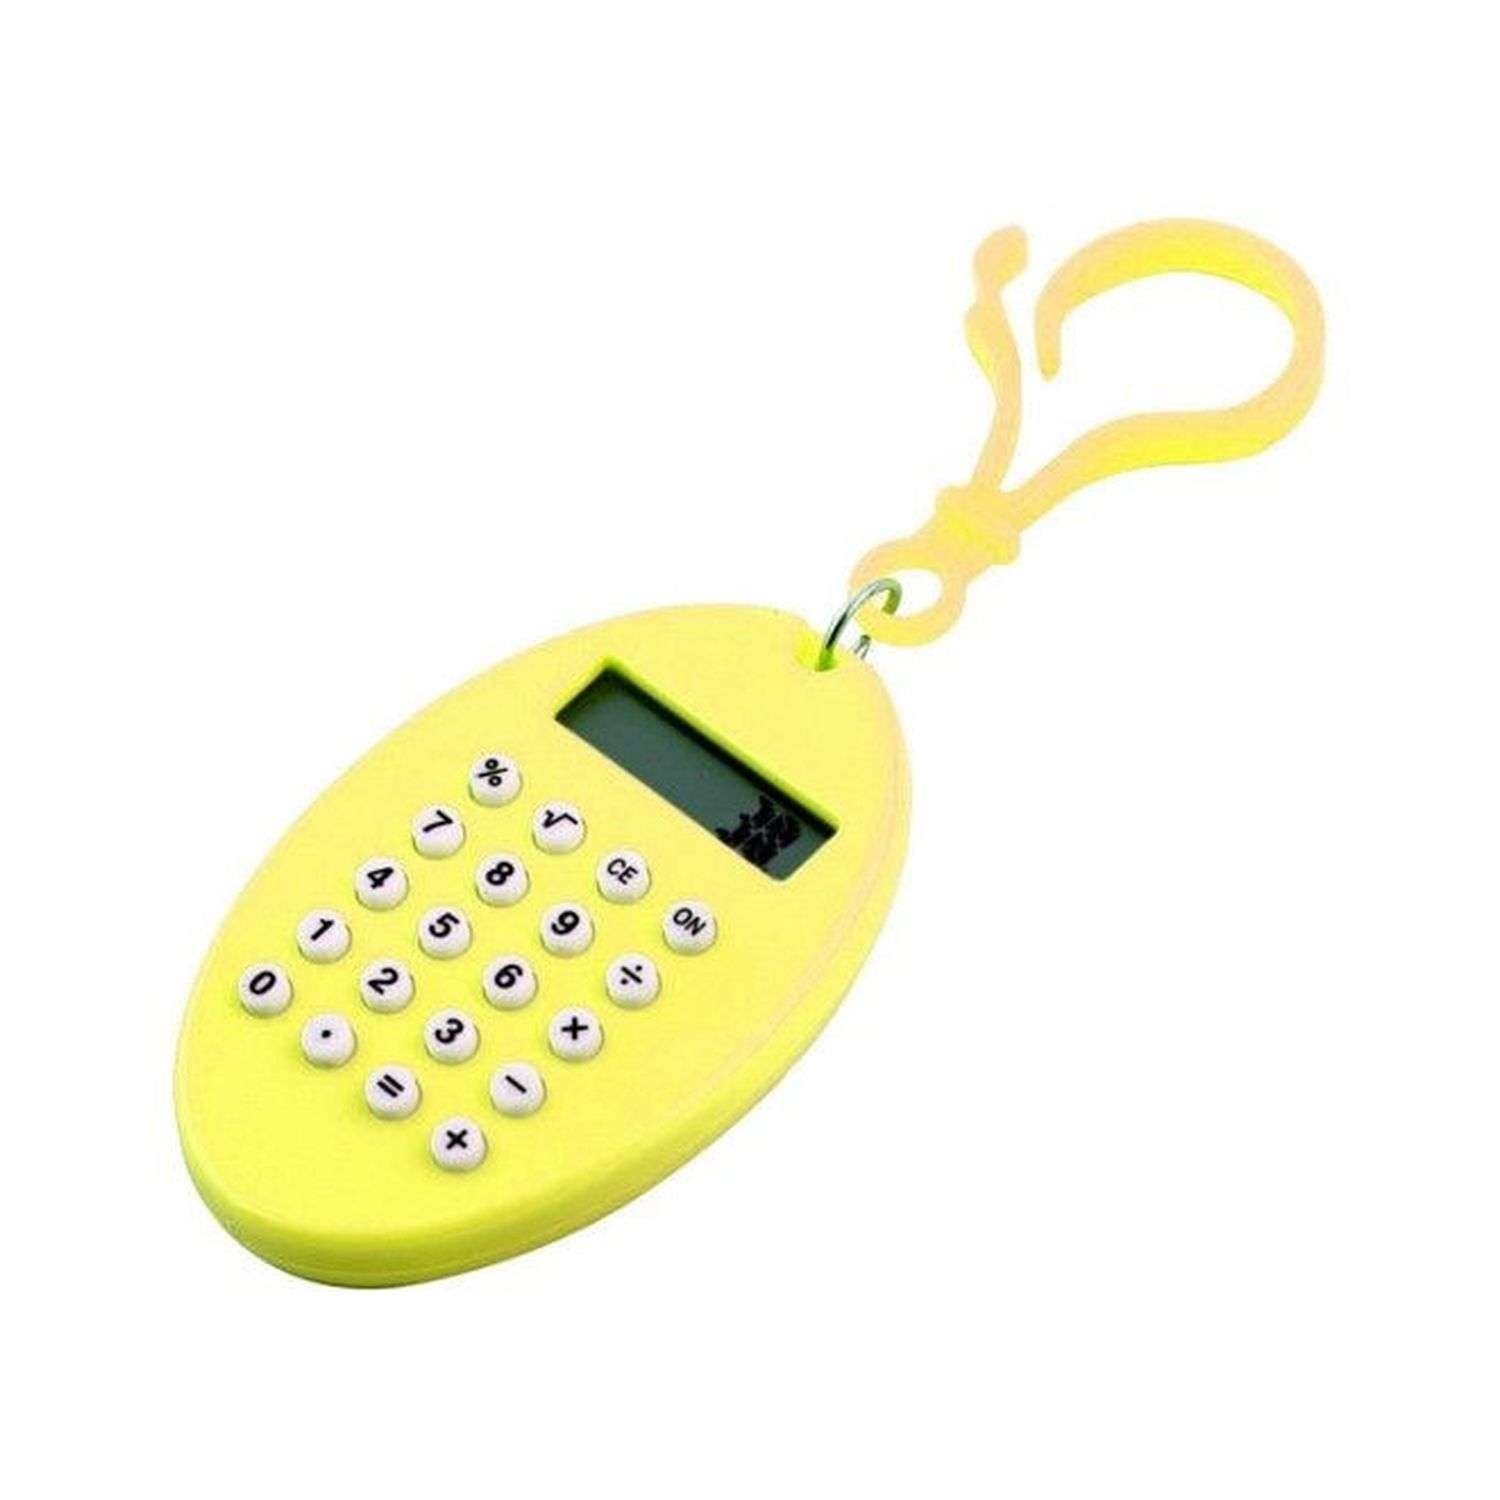 Брелок-калькулятор Uniglodis Овал желтый - фото 1